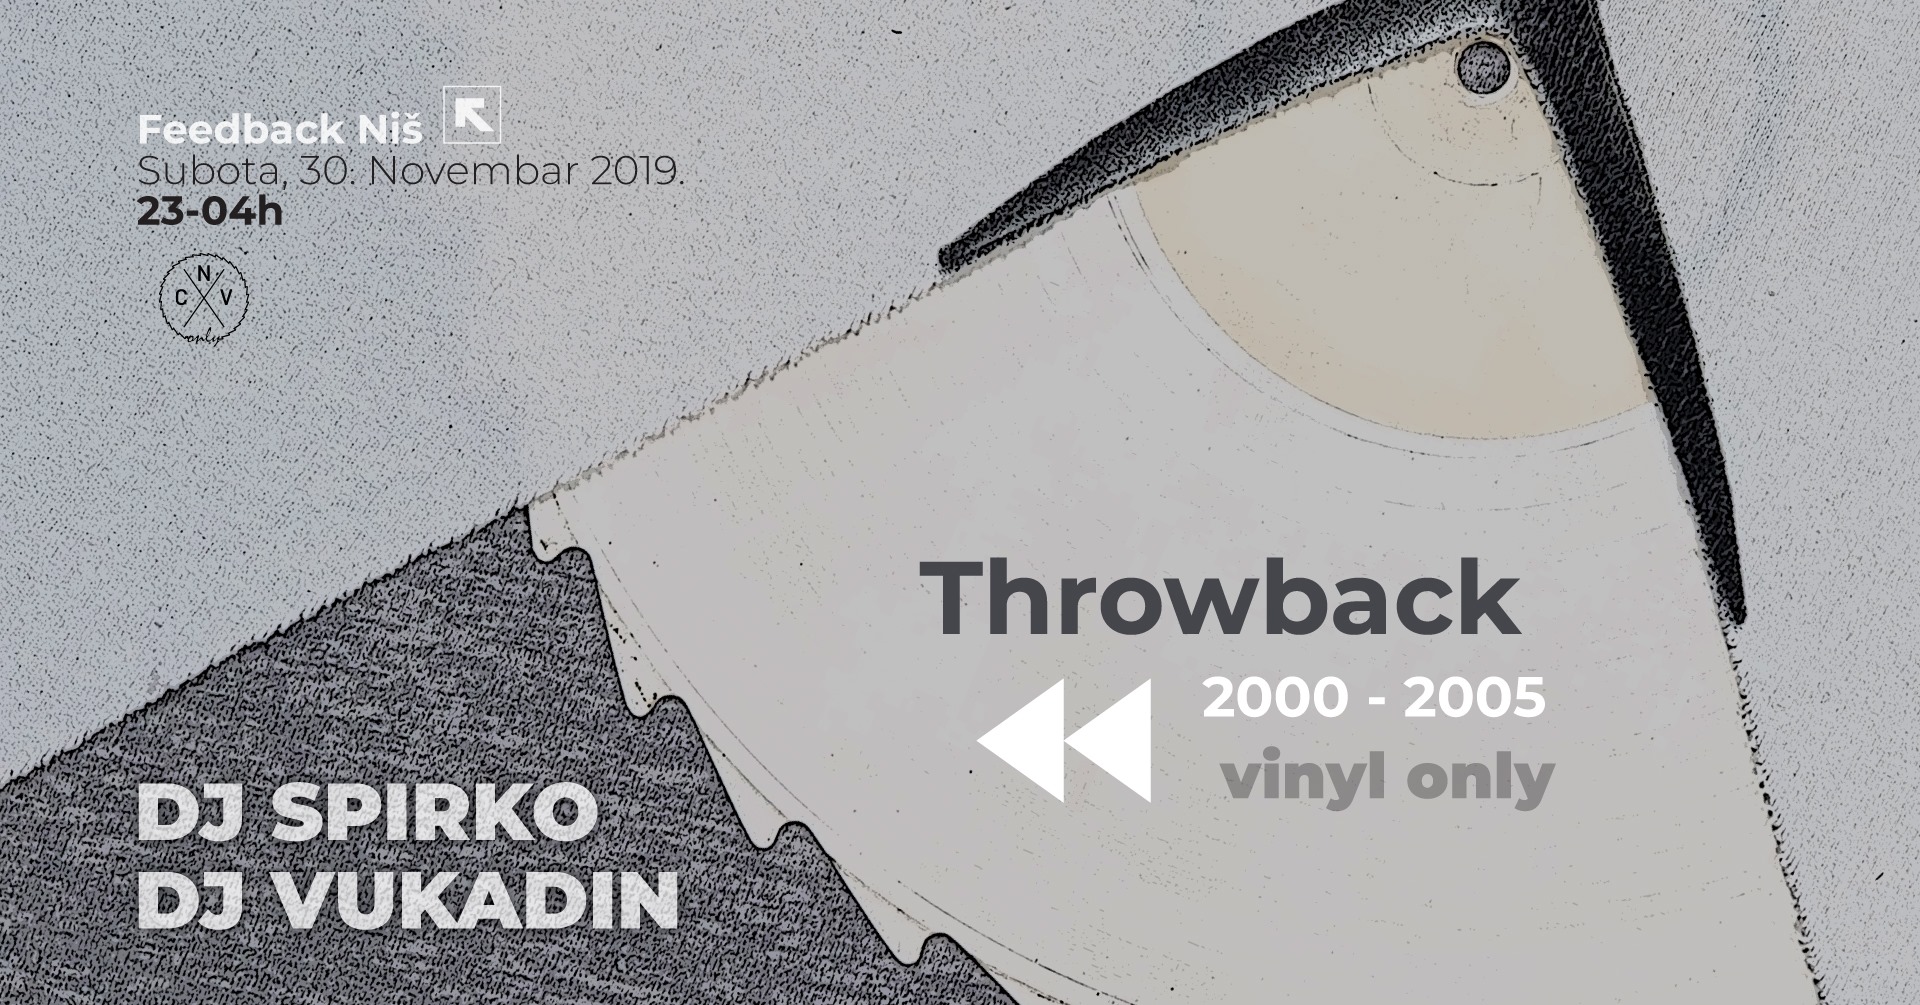 Throwback - DJ Spirko - DJ Vukadin - 30. Nov - Feedback